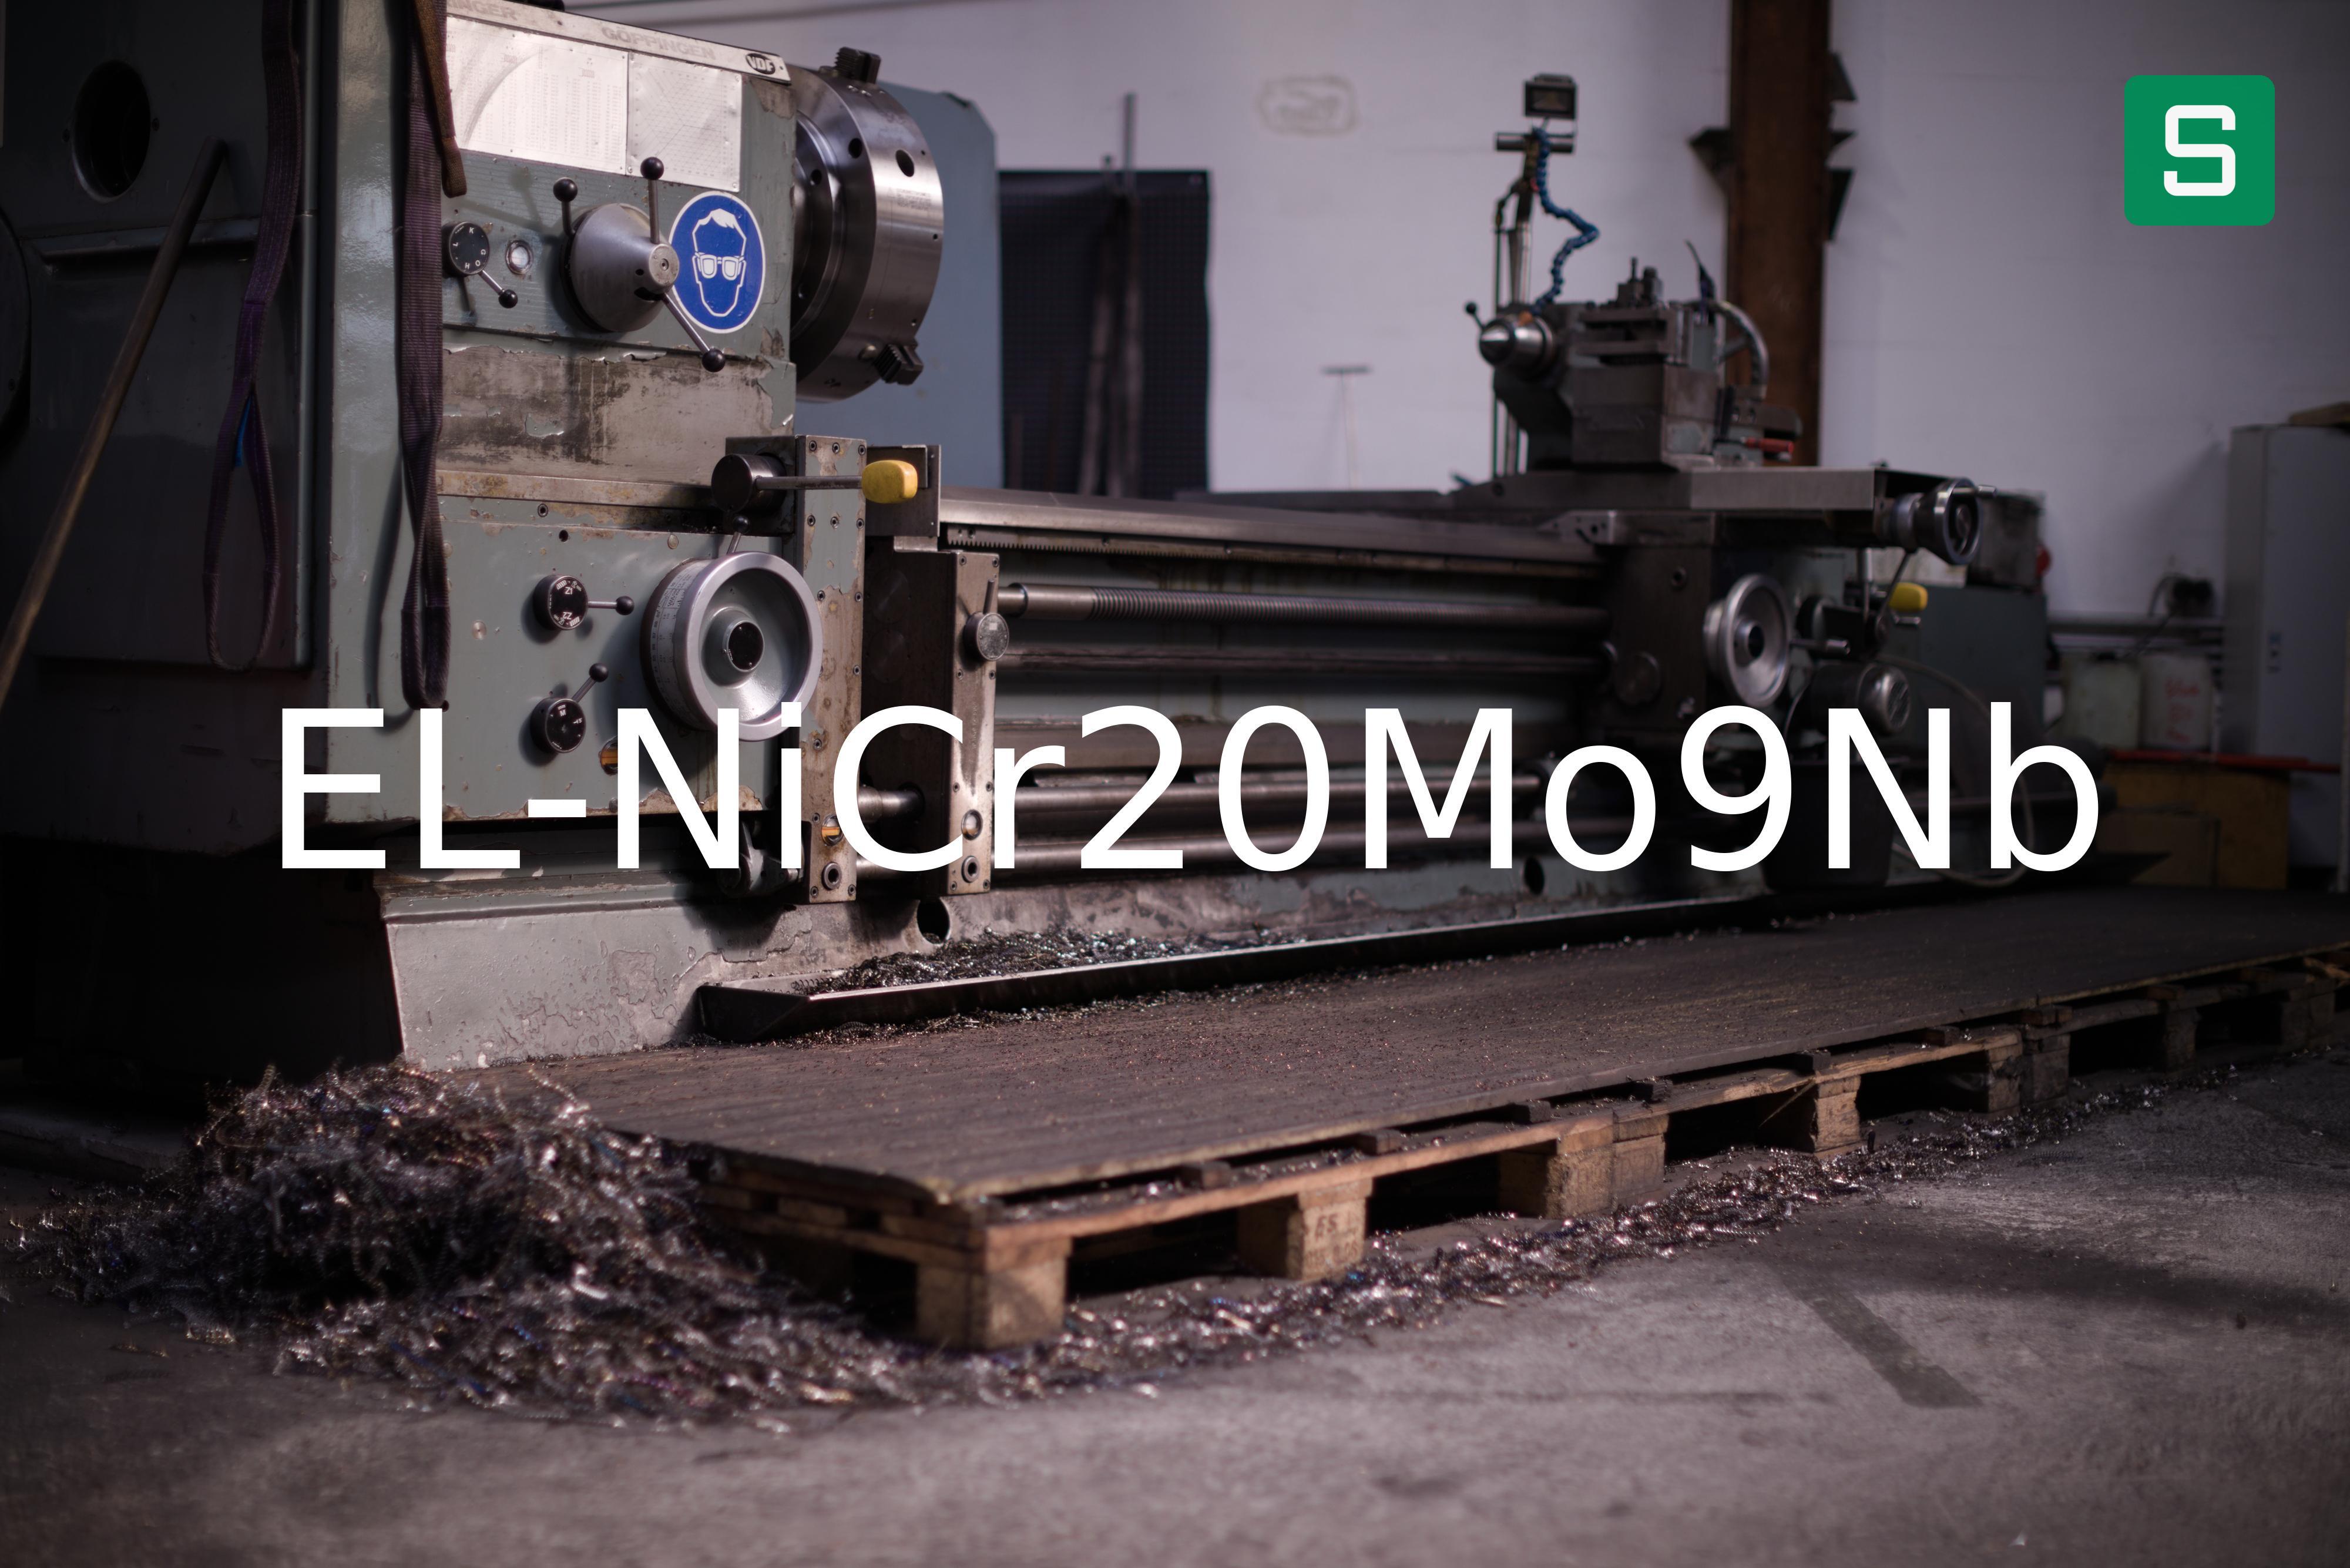 Steel Material: EL-NiCr20Mo9Nb